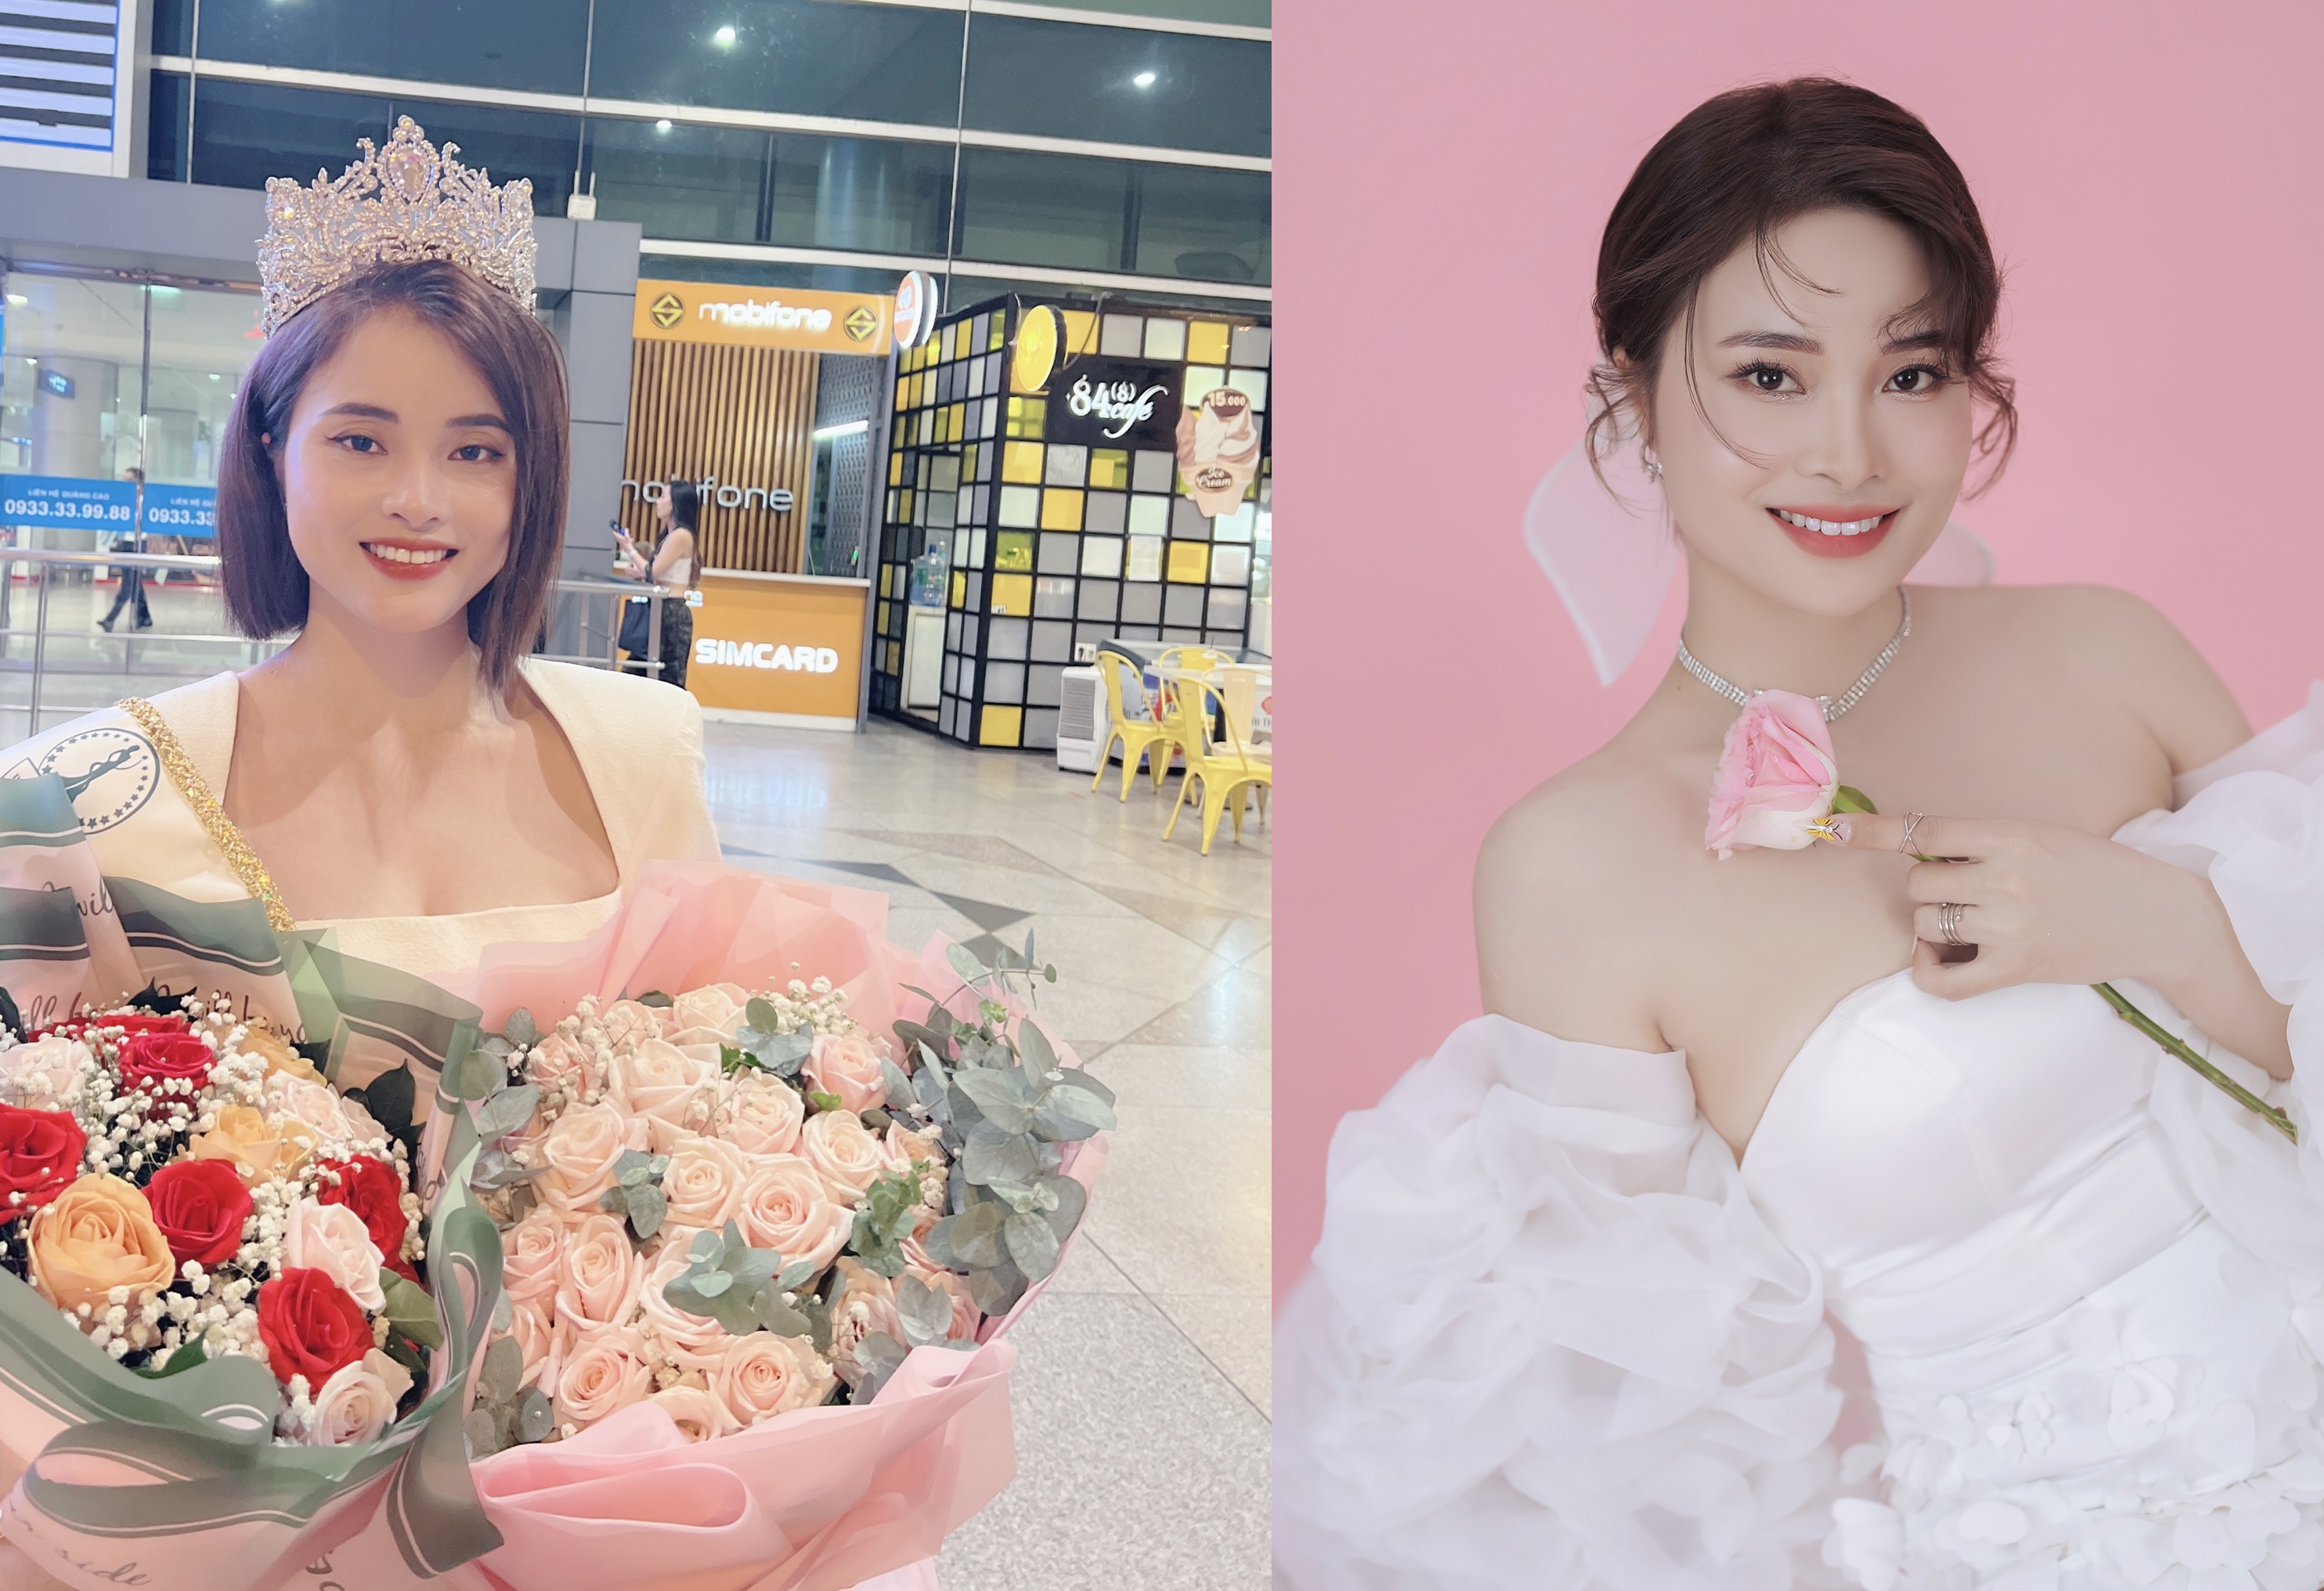 Vũ Hương Thị Hà Mi - đạt danh hiệu Hoa hậu doanh nhân toàn cầu tài năng 2022 tại Malaysia